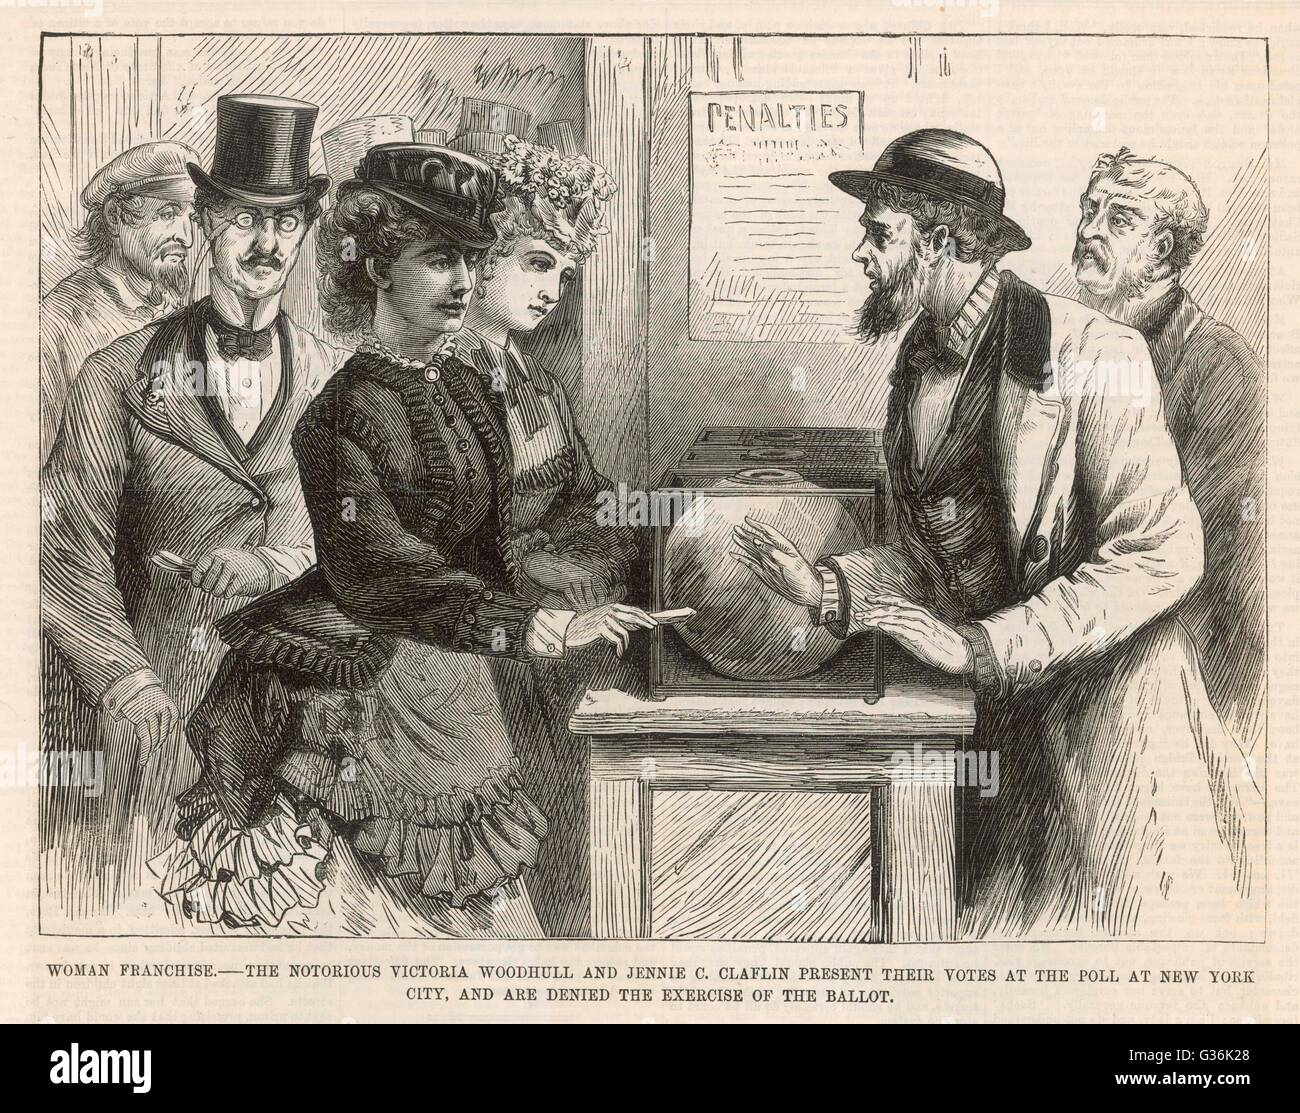 Victoria Woodhull (1838 – 1927), festgestellt, dass amerikanische Feministin, mit ihrer Schwester Jennie Claflin, versuchen Sie, die New York Wahl von 1871, aber sind abgewiesen.      Datum: 1871 Stockfoto